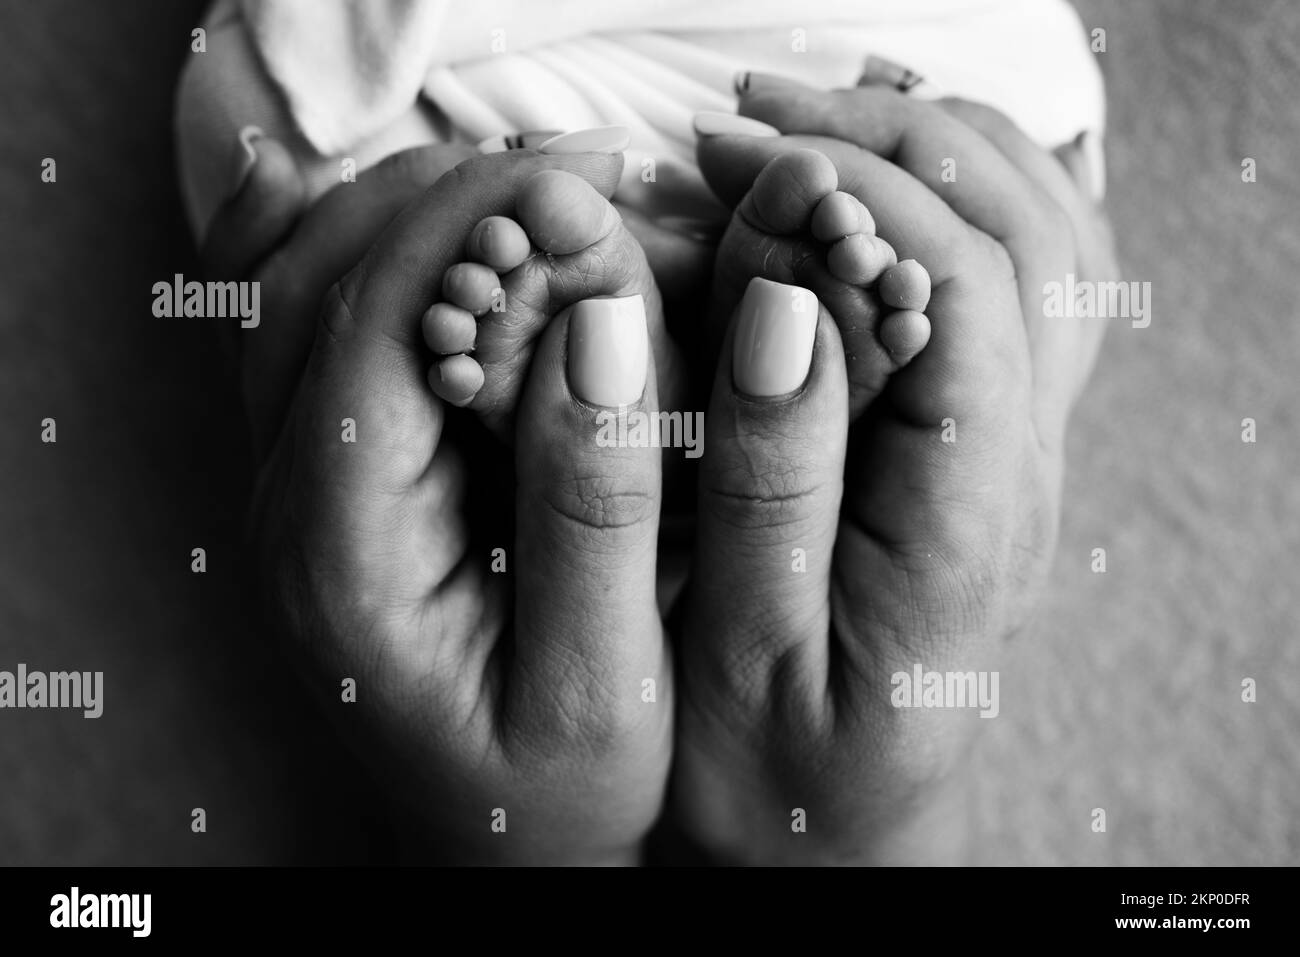 Gambe, dita dei piedi, piedi e talloni di un neonato.la madre tiene delicatamente le gambe del bambino. Foto Stock